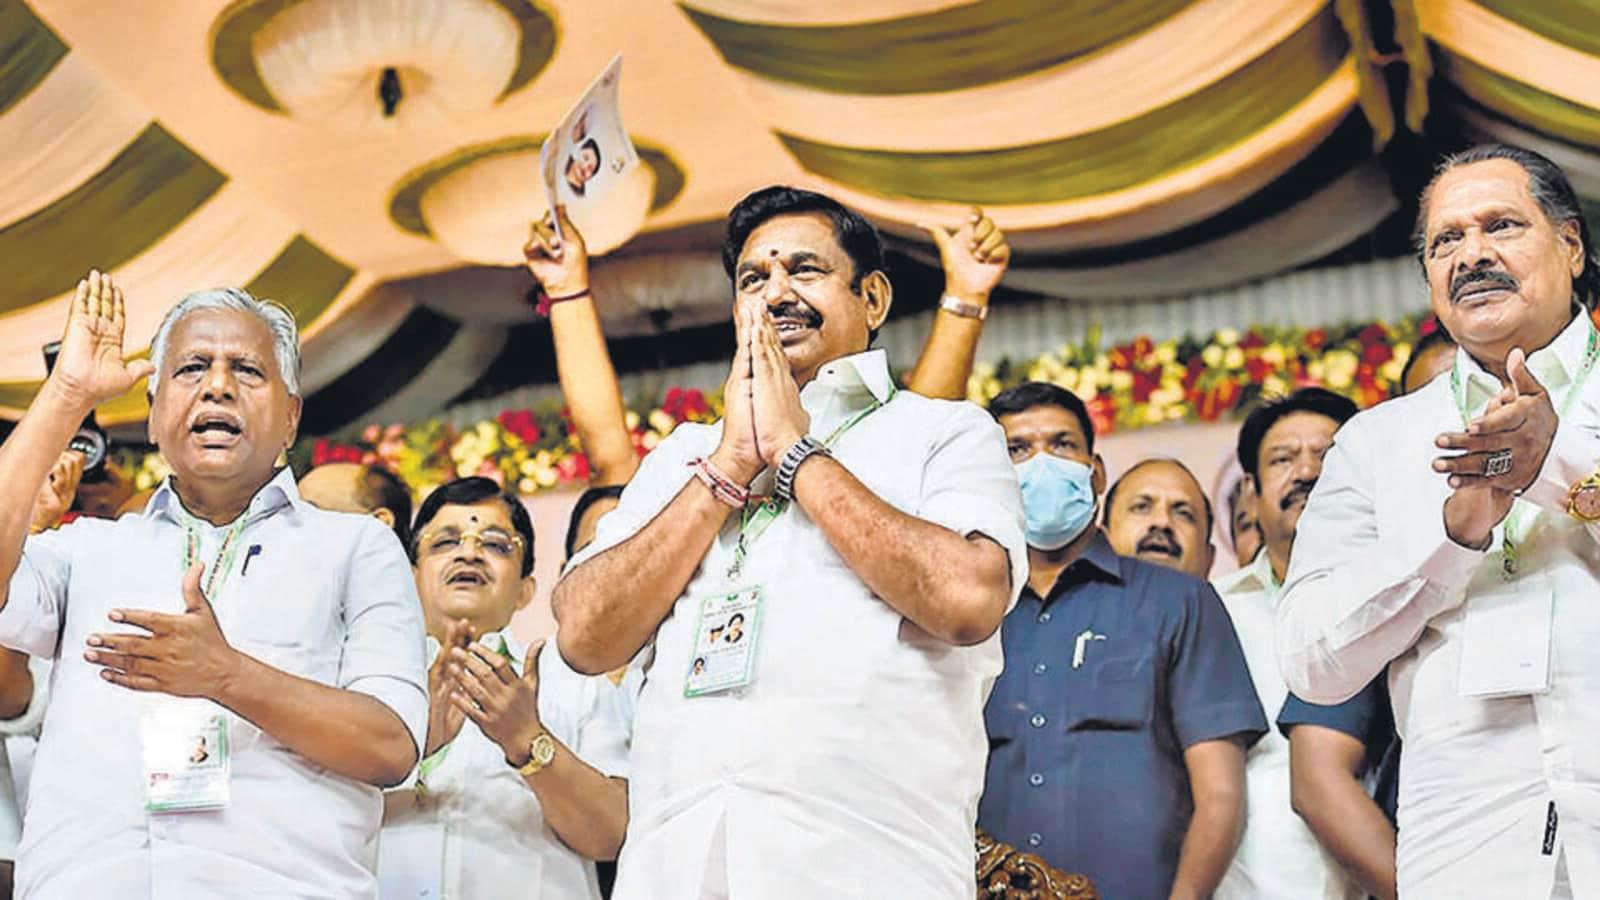 AIADMK celebrates ending ties with BJP in Tamil Nadu, calls it 